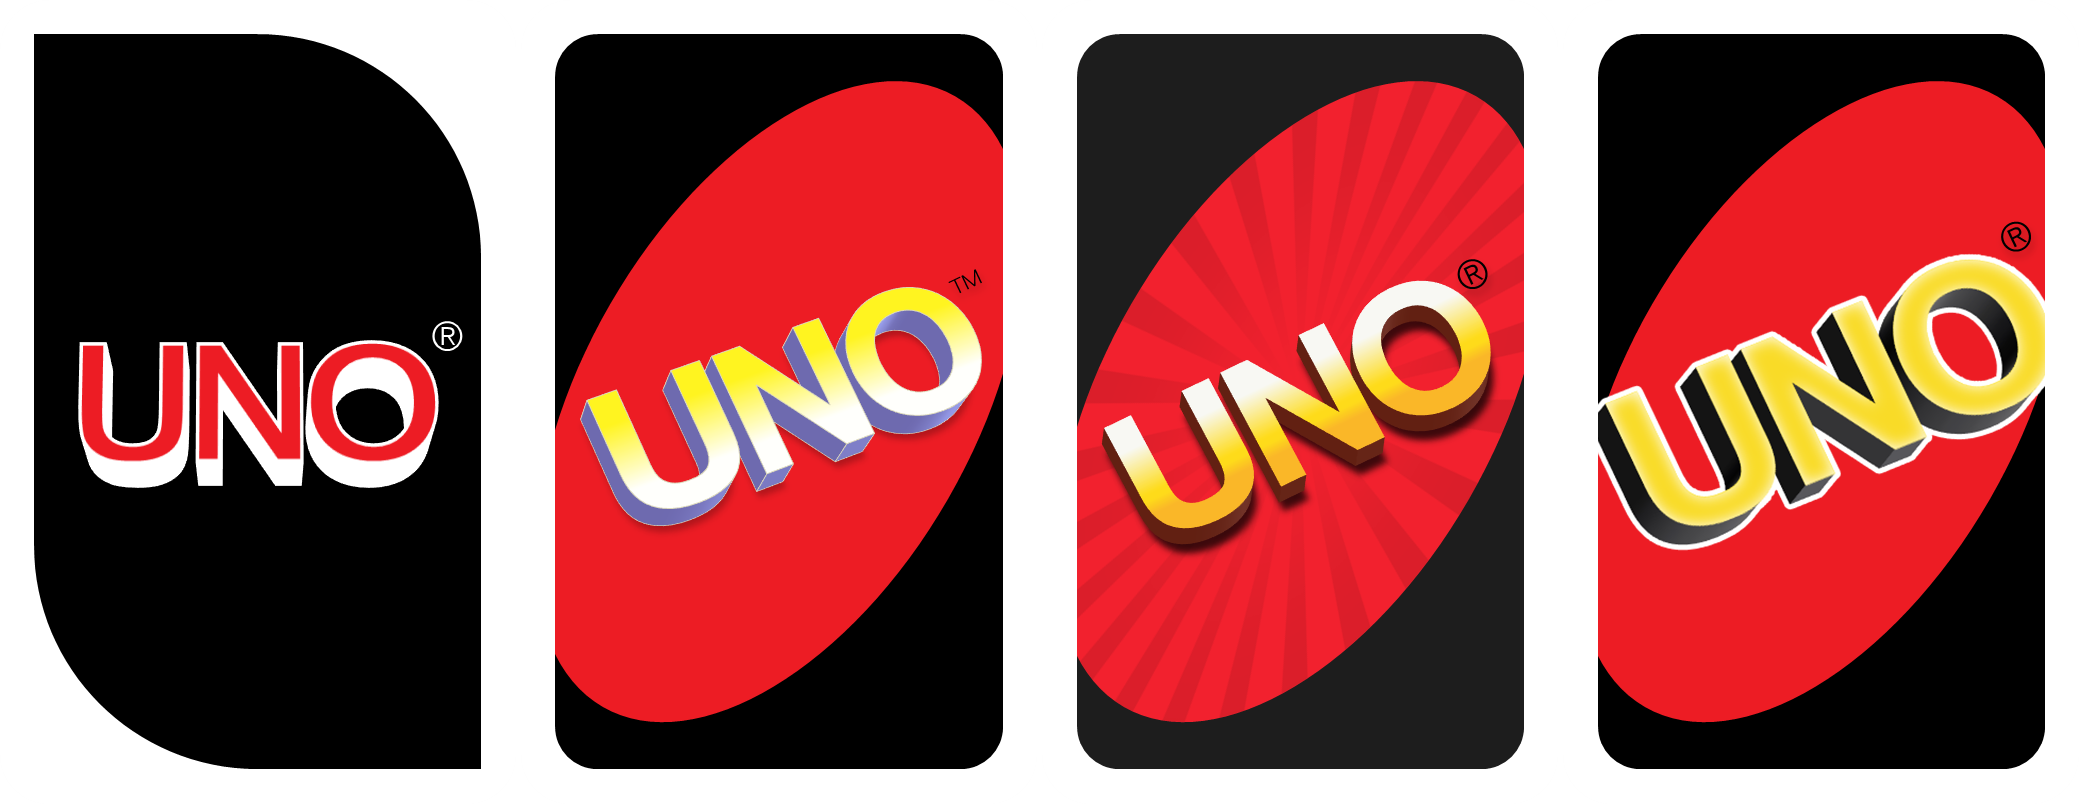 Uno card back (4 versions) by monosatas on DeviantArt